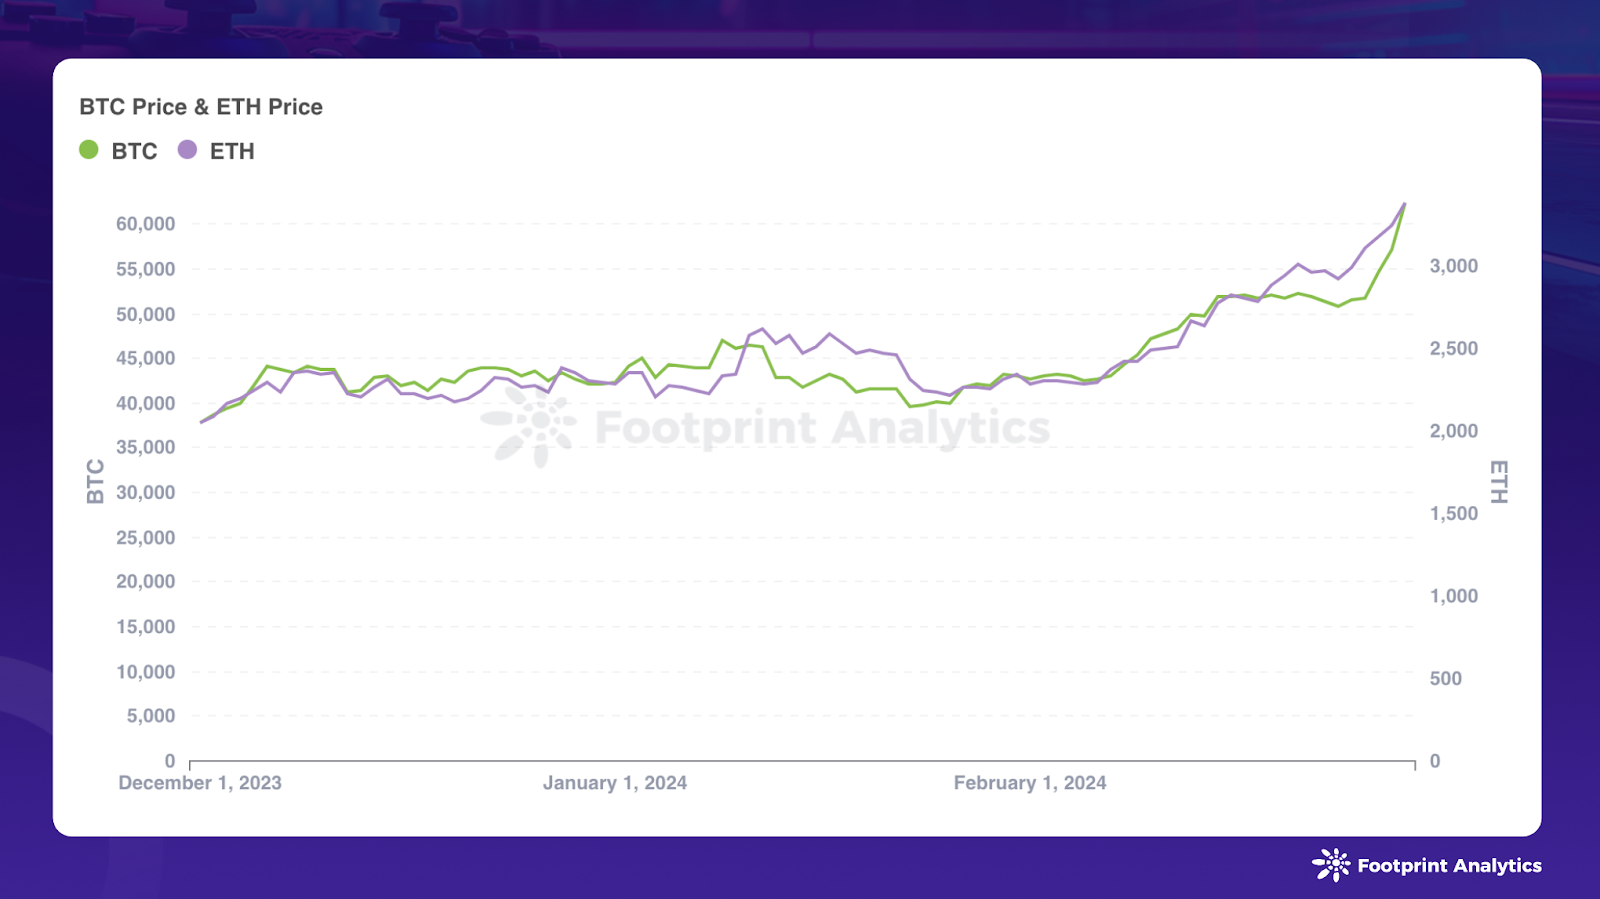 数据来源：比特币和以太坊价格 - Footprint Analytics